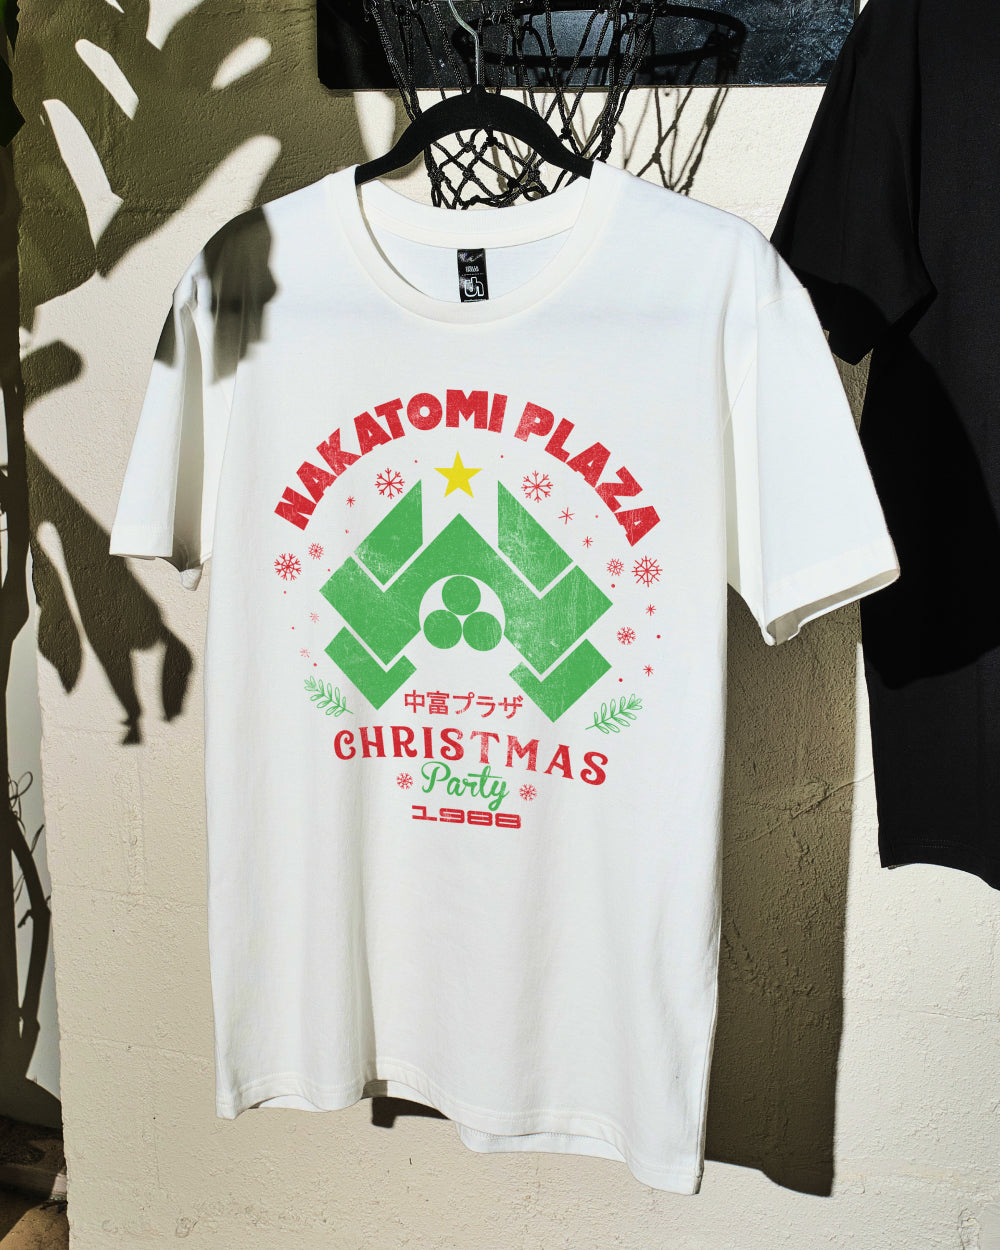 Nakatomi Christmas Party 1988 T-Shirt Australia Online #colour_white